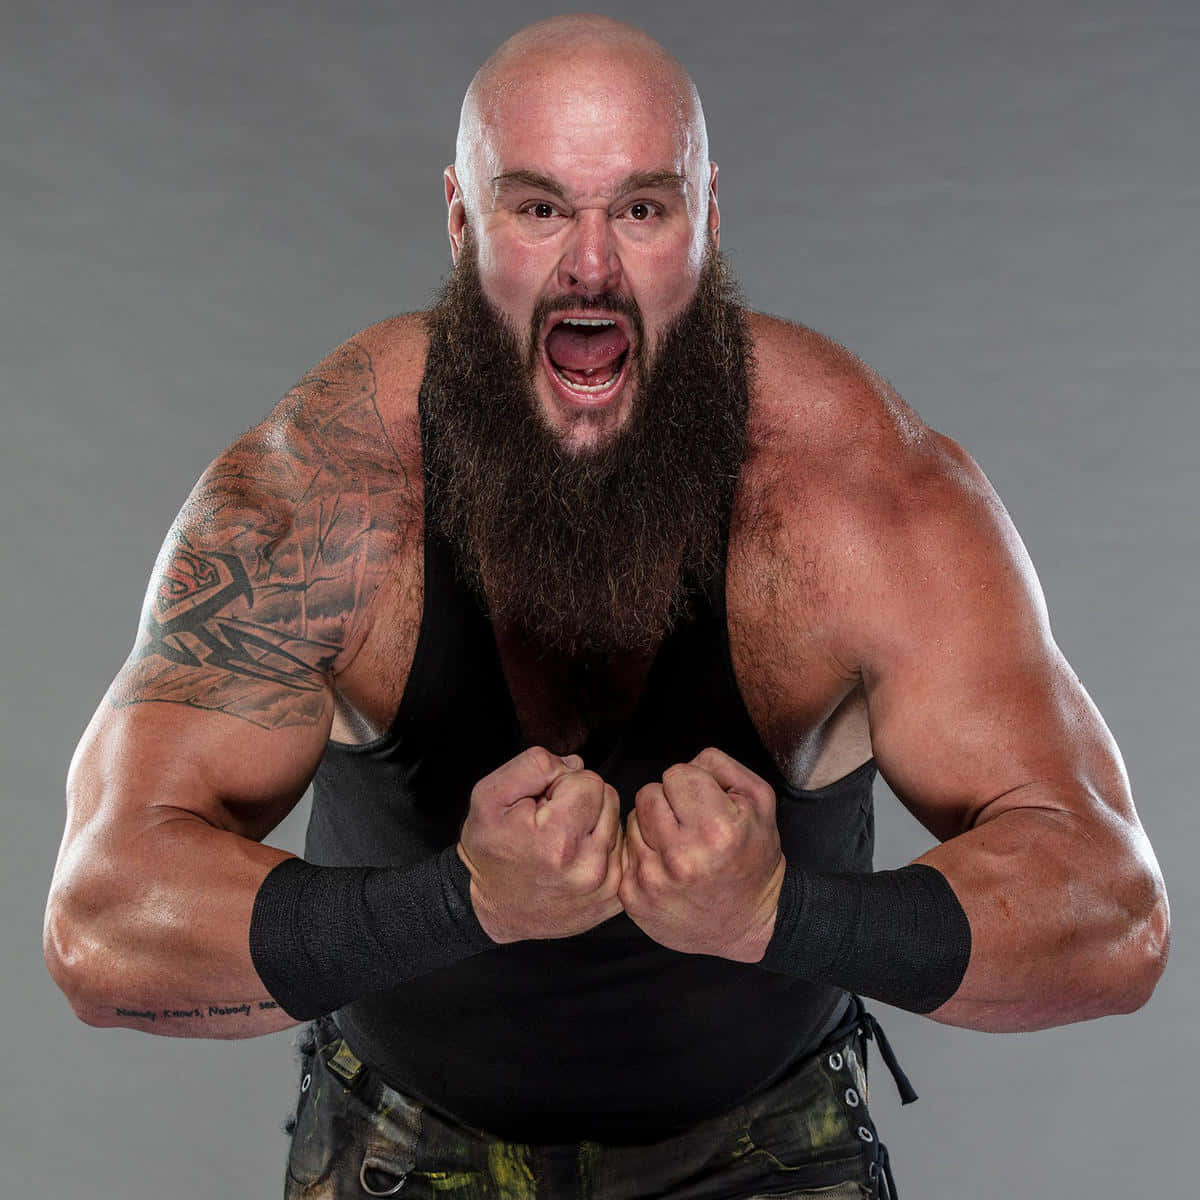 American Professional Wrestler Braun Strowman Photoshoot Background